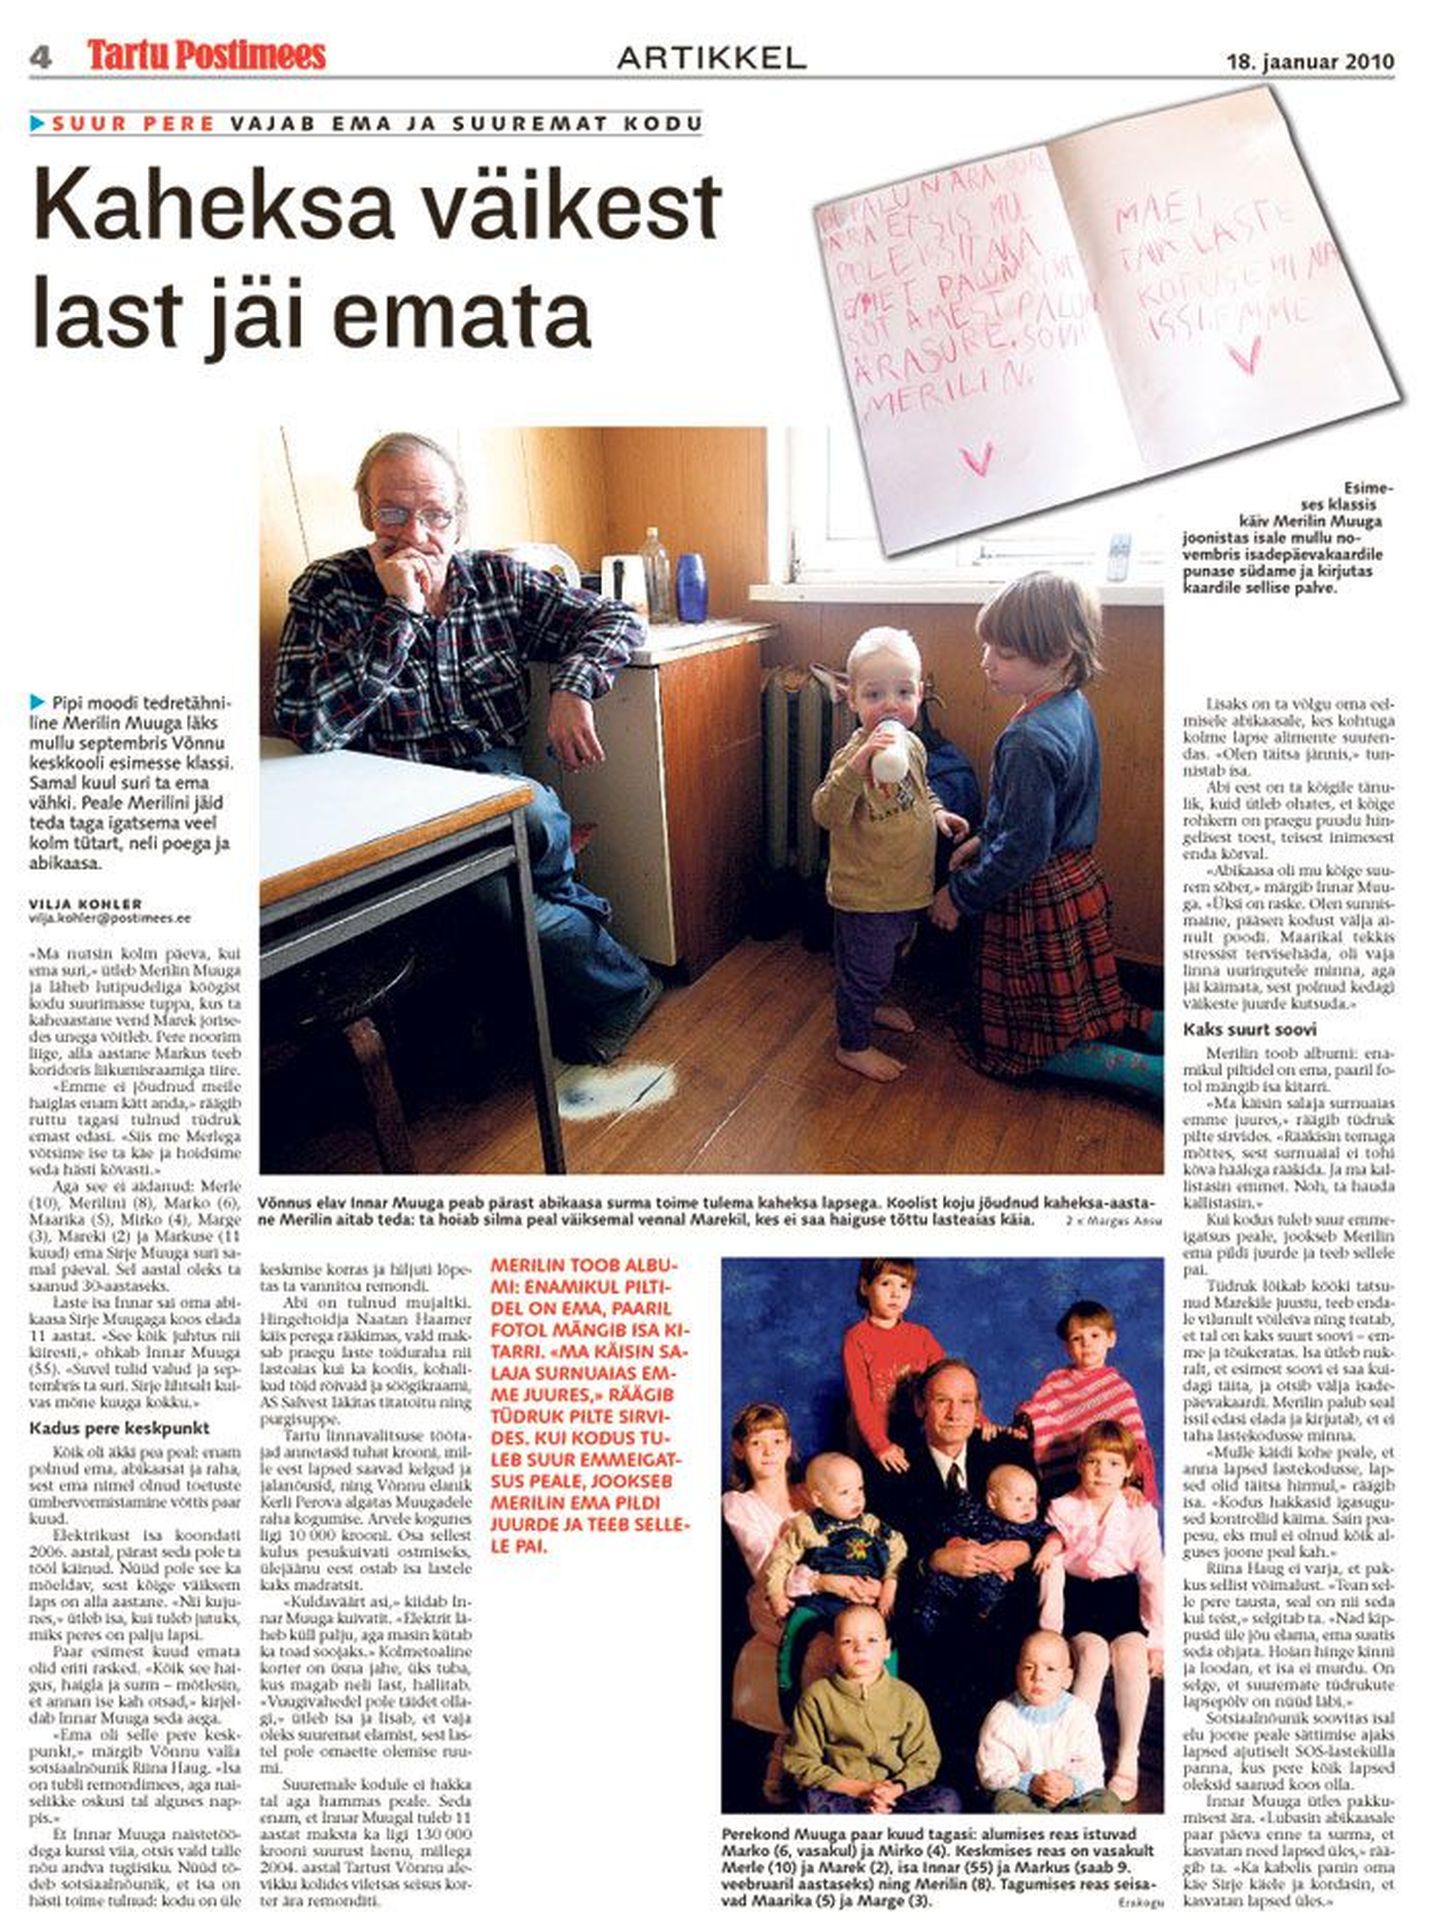 Tartu Postimees avaldas loo ema kaotanud Võnnu perest 18. jaanuaril.